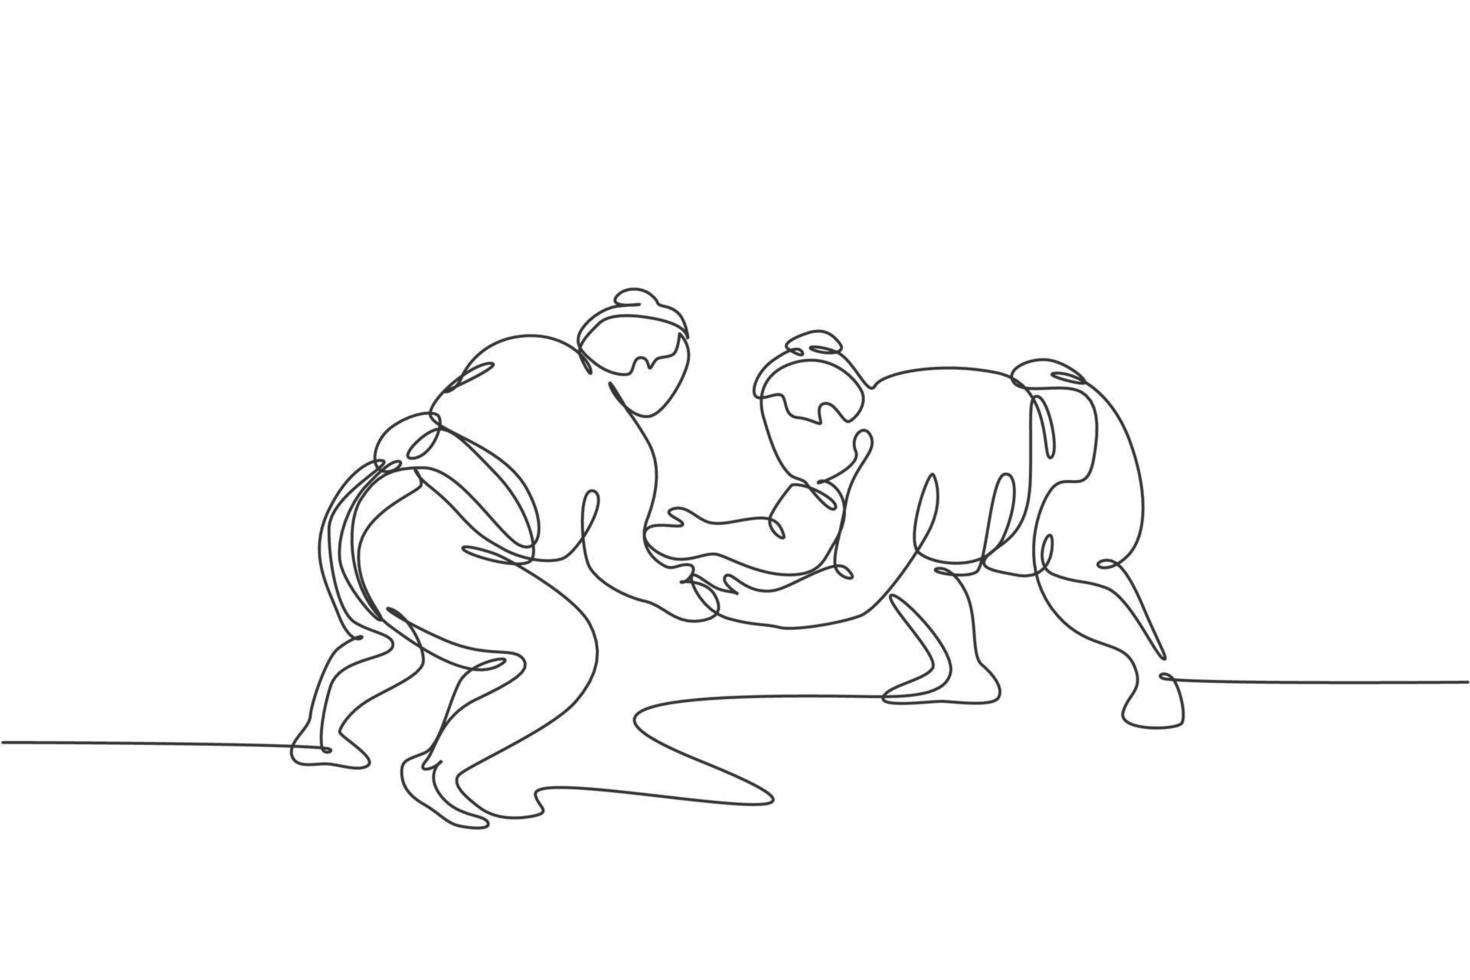 linha única contínua desenhando dois jovens grandes e gordos homens japoneses de sumô treinando luta no centro de ginástica da arena. conceito tradicional de arte marcial do festival. tendência de uma linha desenhar ilustração vetorial de design gráfico vetor